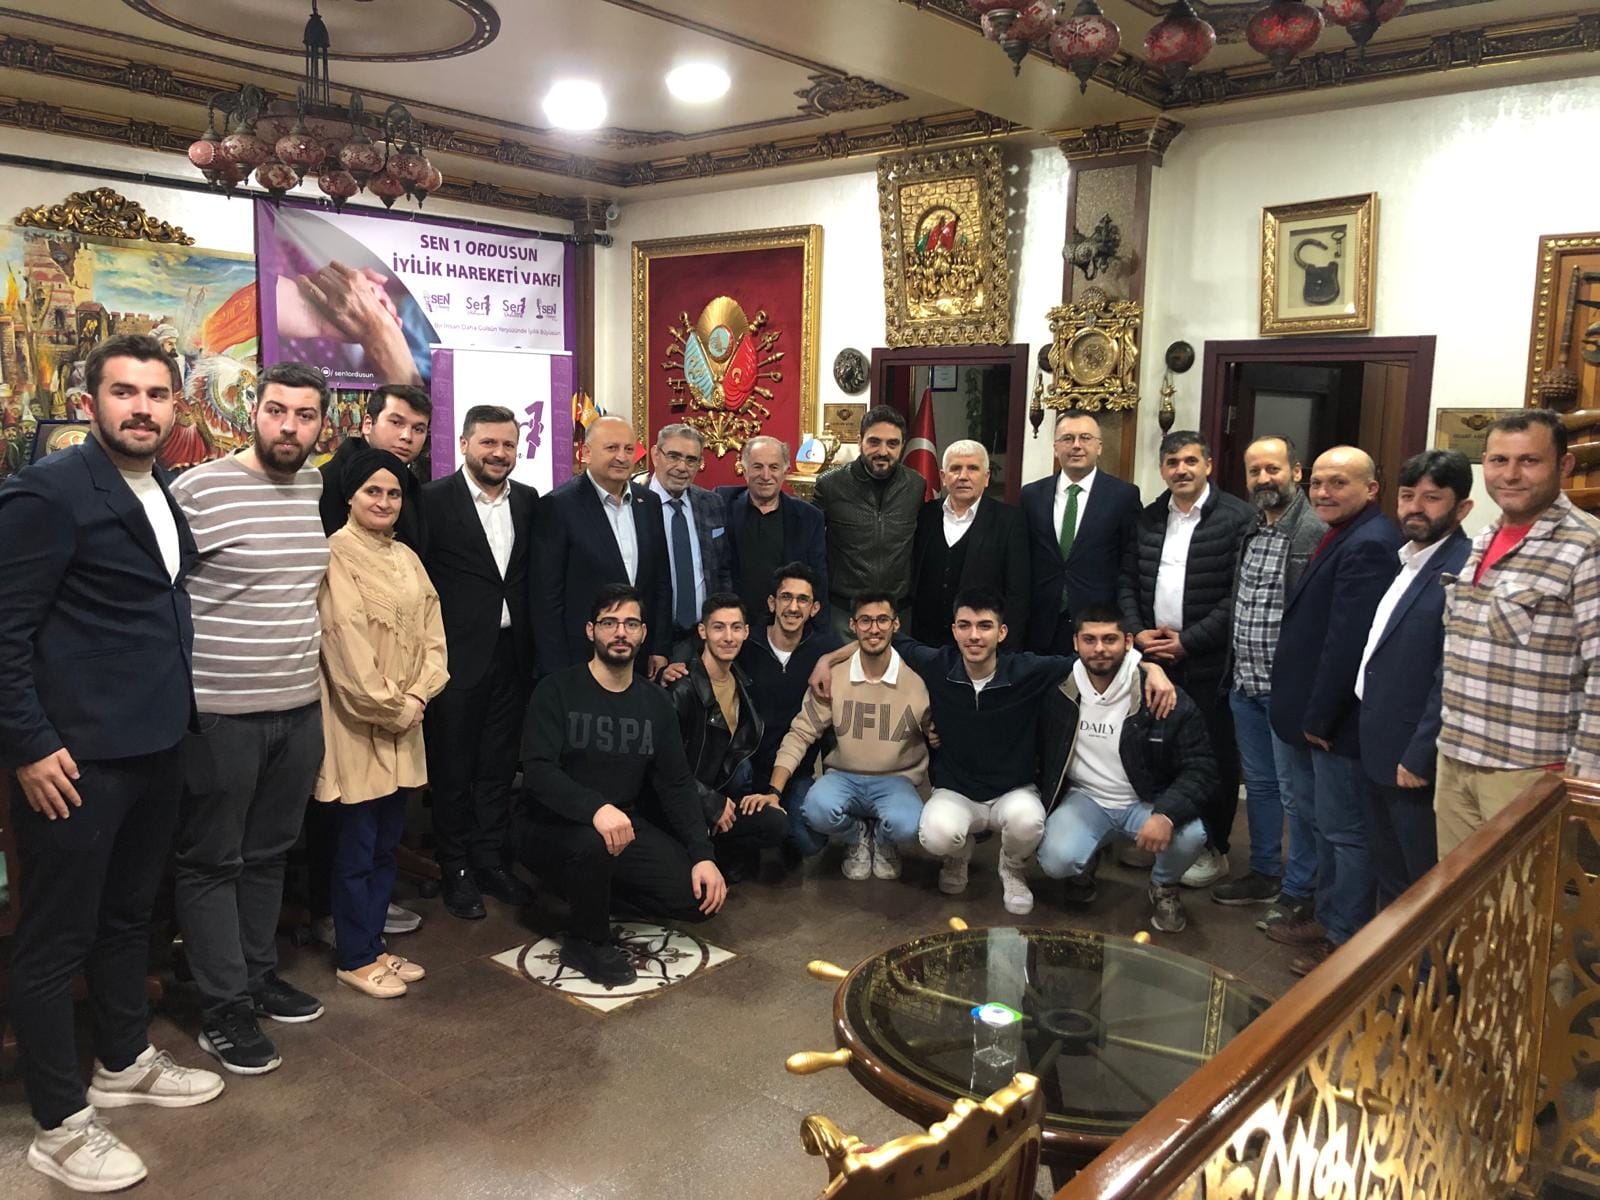 Ünye Belediyesi İstanbul'daki Vakfı Ziyaret Etti, Sosyal Bağları Güçlendirdi